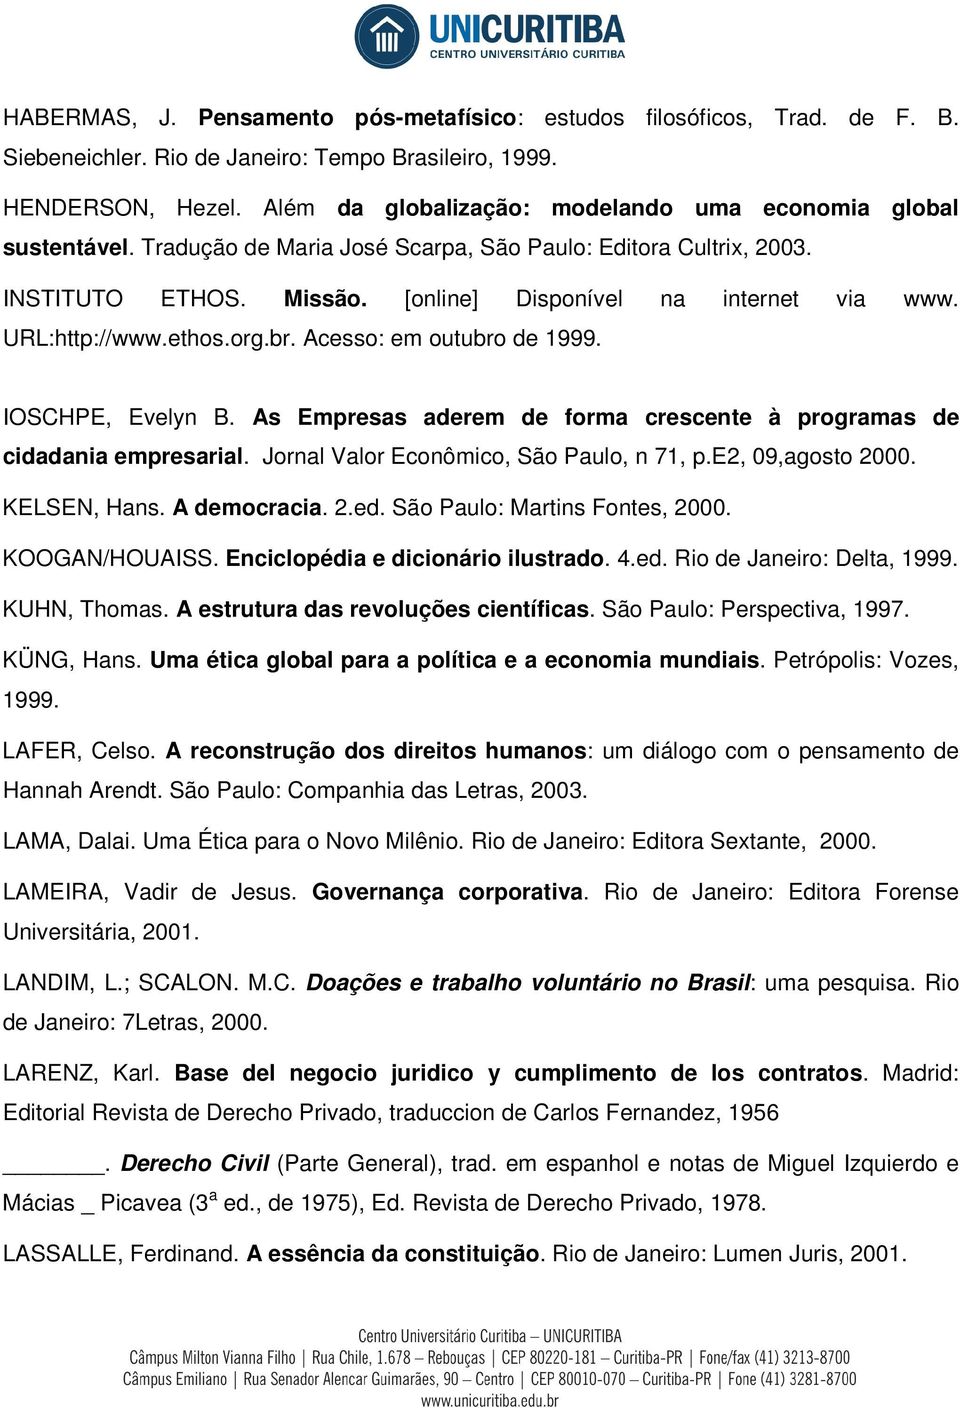 URL:http://www.ethos.org.br. Acesso: em outubro de 1999. IOSCHPE, Evelyn B. As Empresas aderem de forma crescente à programas de cidadania empresarial. Jornal Valor Econômico, São Paulo, n 71, p.